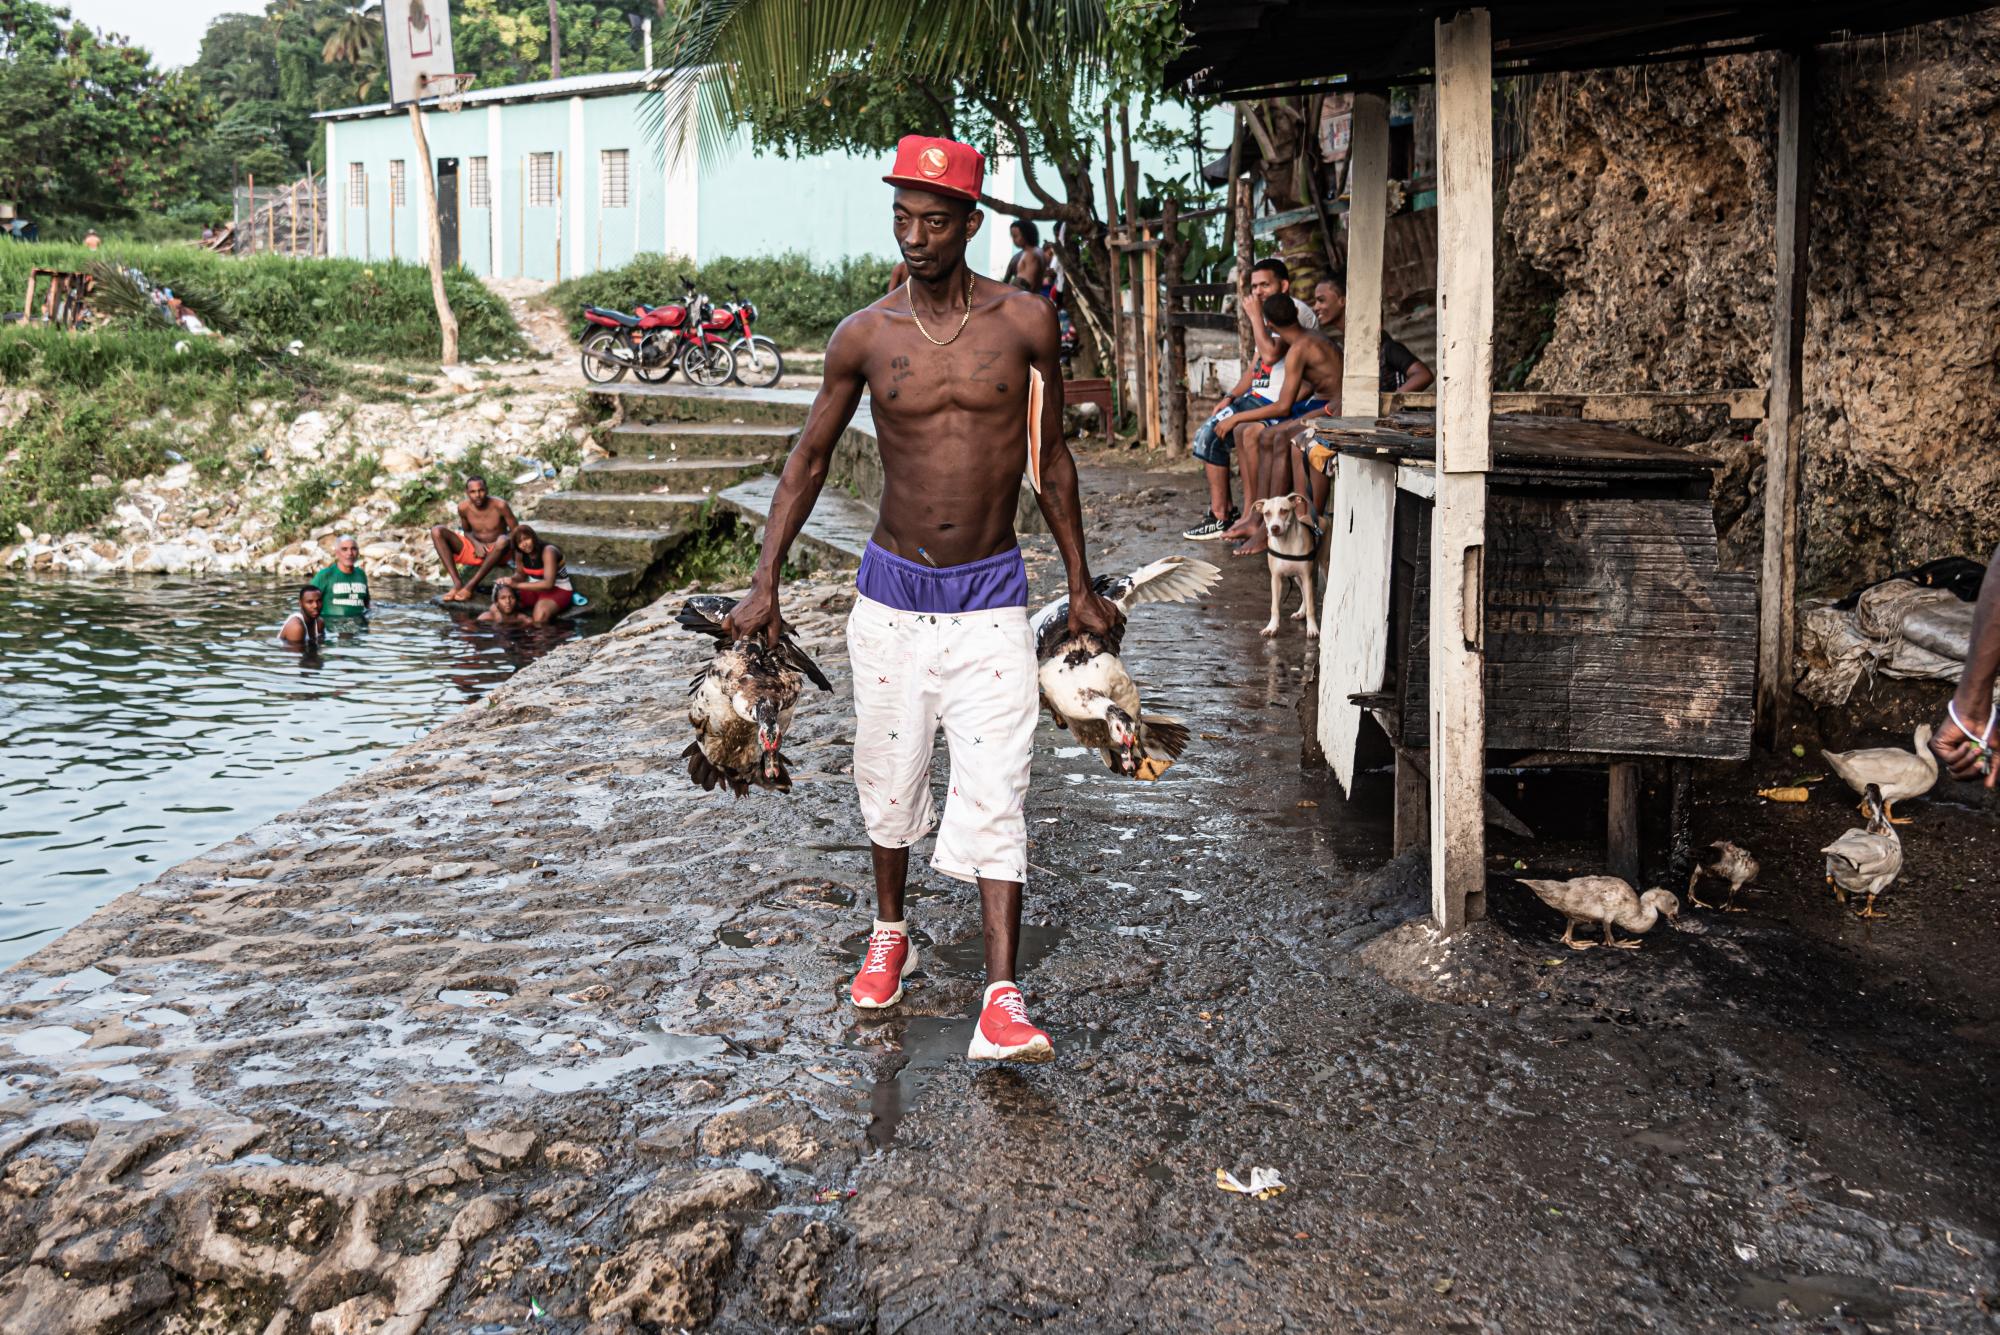 Un hombre camina en los alrededores de la poza vendiendo patos, mientras otras personas se bañan. (Foto: Eddy Vittini)